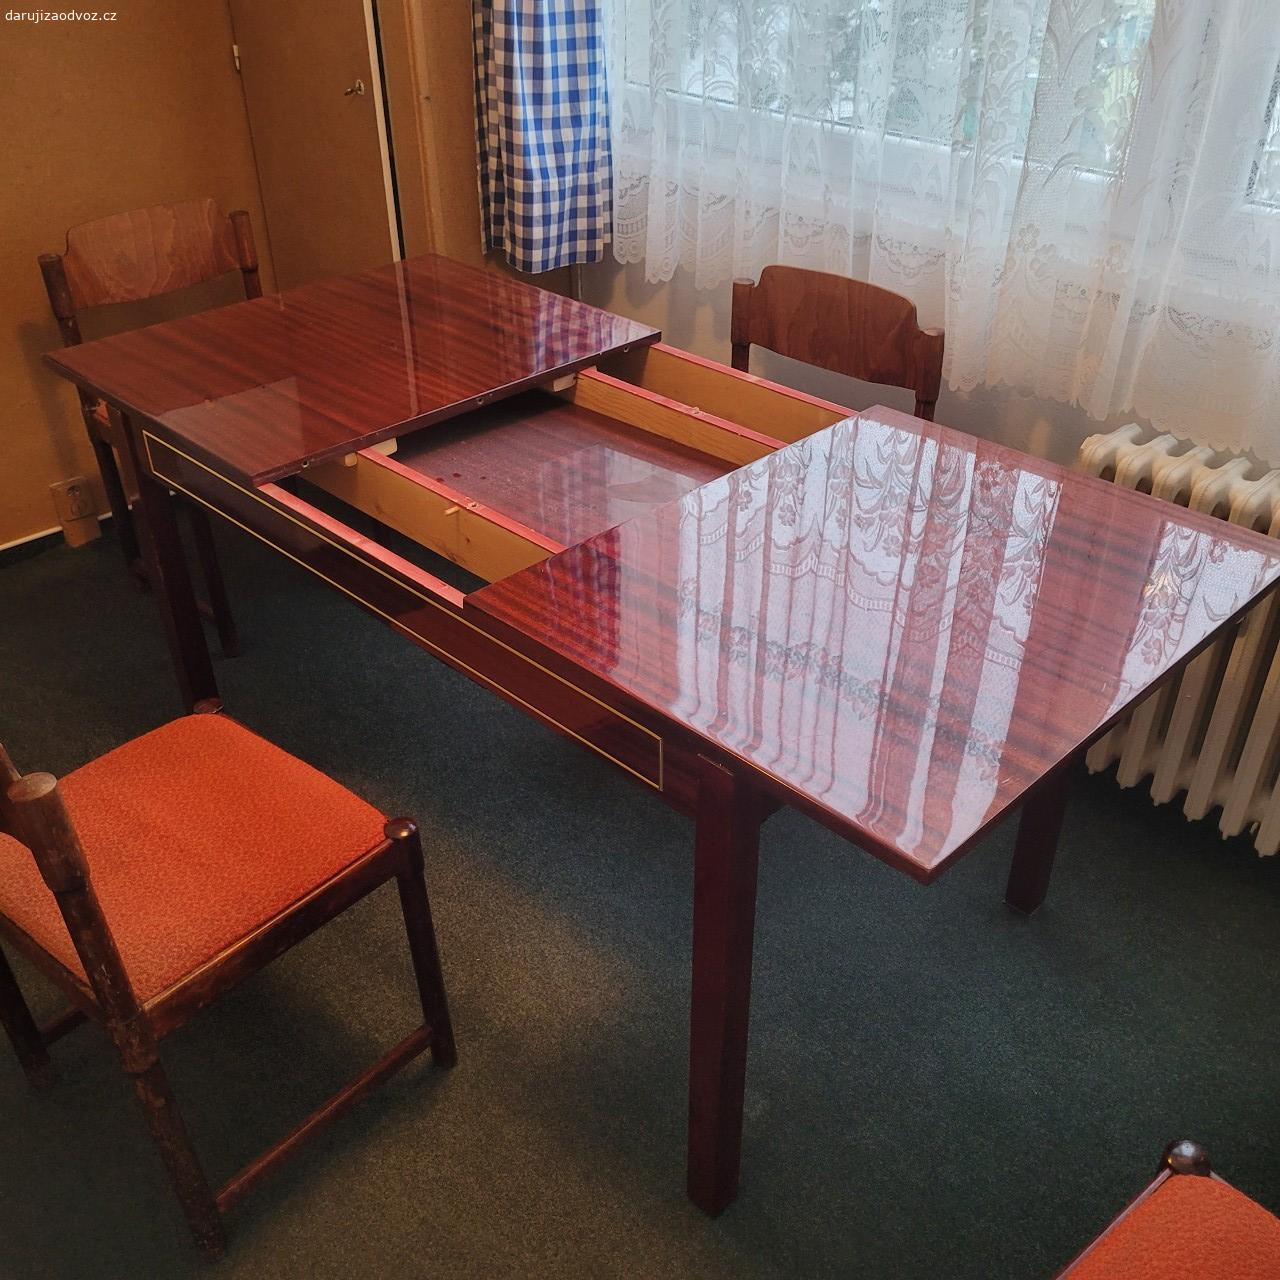 Daruji rozkládací jídelní stůl. Daruji dřevěný rozkládací jídelní stůl se 6 židlemi. Rozměry: šířka 130 (170) cm, hloubka 55, výška 75 cm. Osobní odběr v Ústí nad Labem.